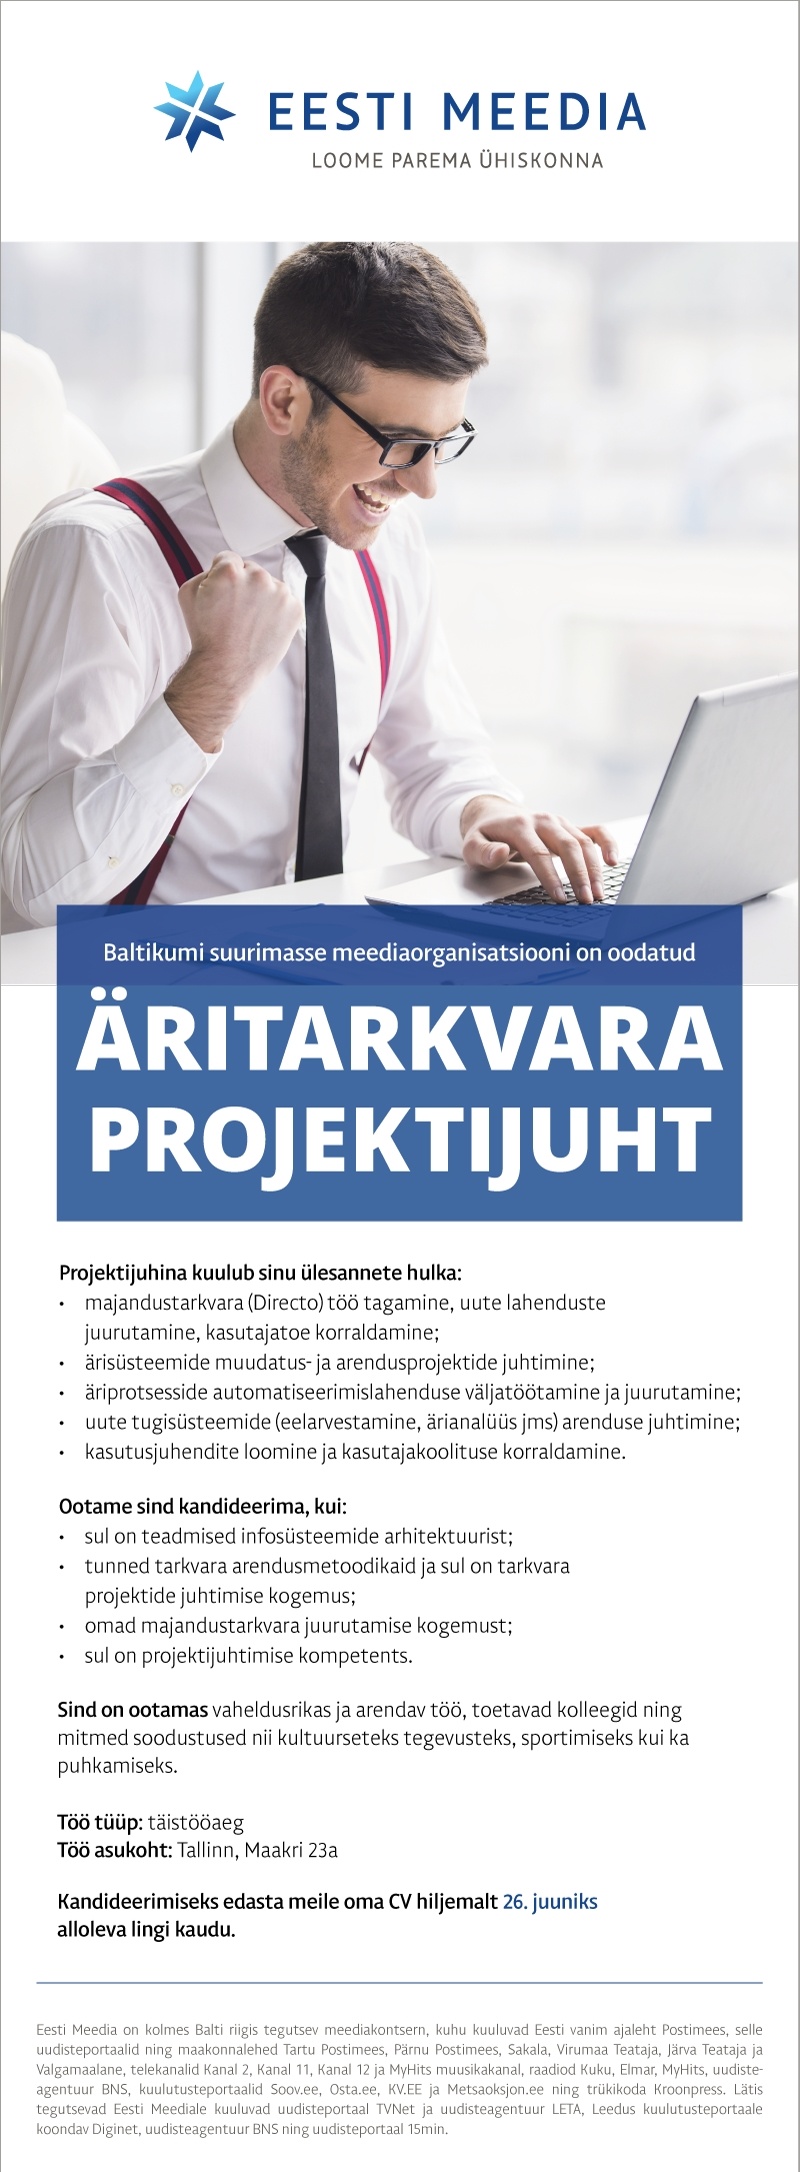 Eesti Meedia AS Äritarkvara projektijuht